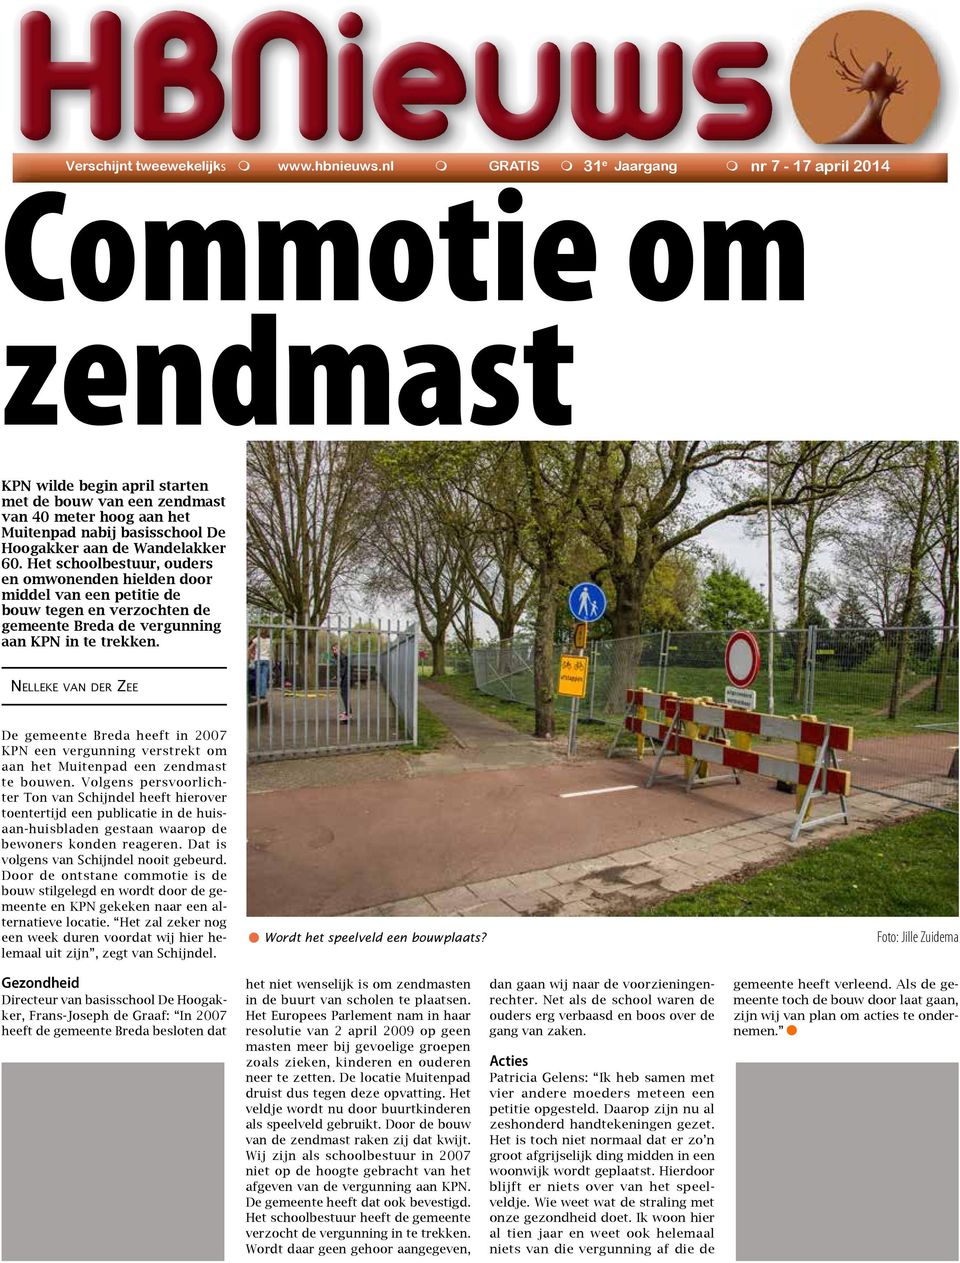 Wandelakker 60. Het schoolbestuur, ouders en omwonenden hielden door middel van een petitie de bouw tegen en verzochten de gemeente Breda de vergunning aan KPN in te trekken.